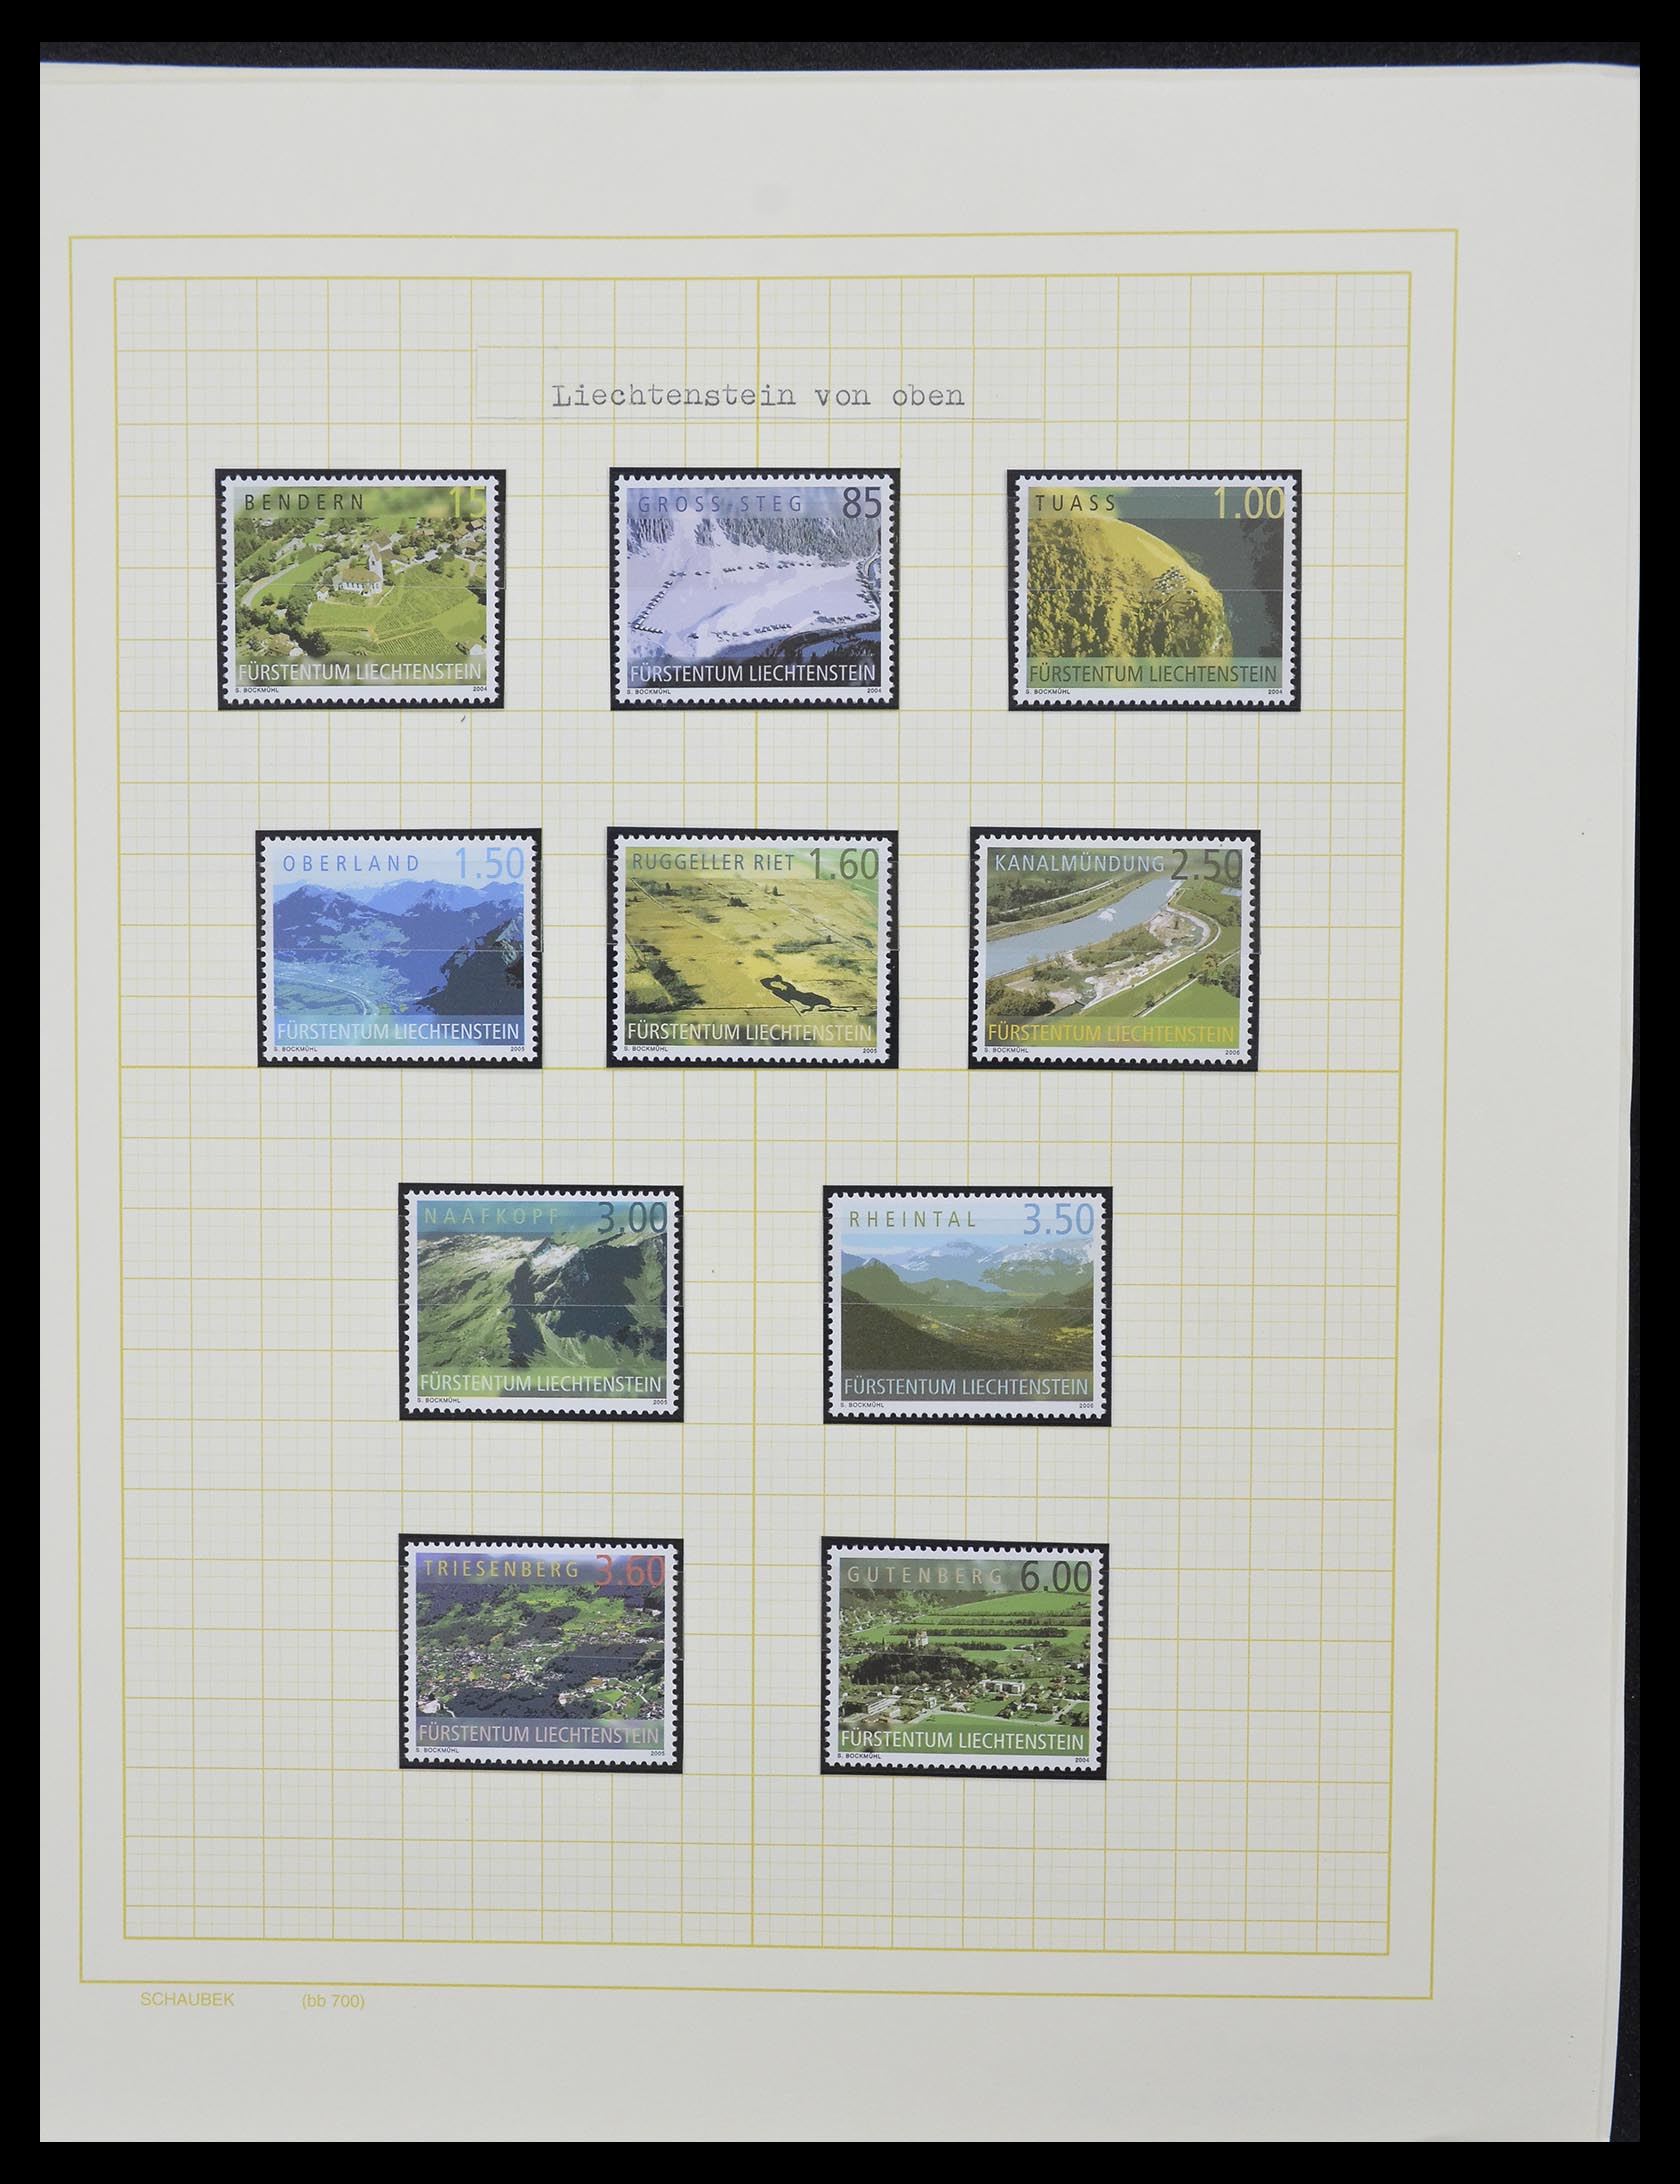 33138 042 - Stamp collection 33138 Liechtenstein 1912-2002.